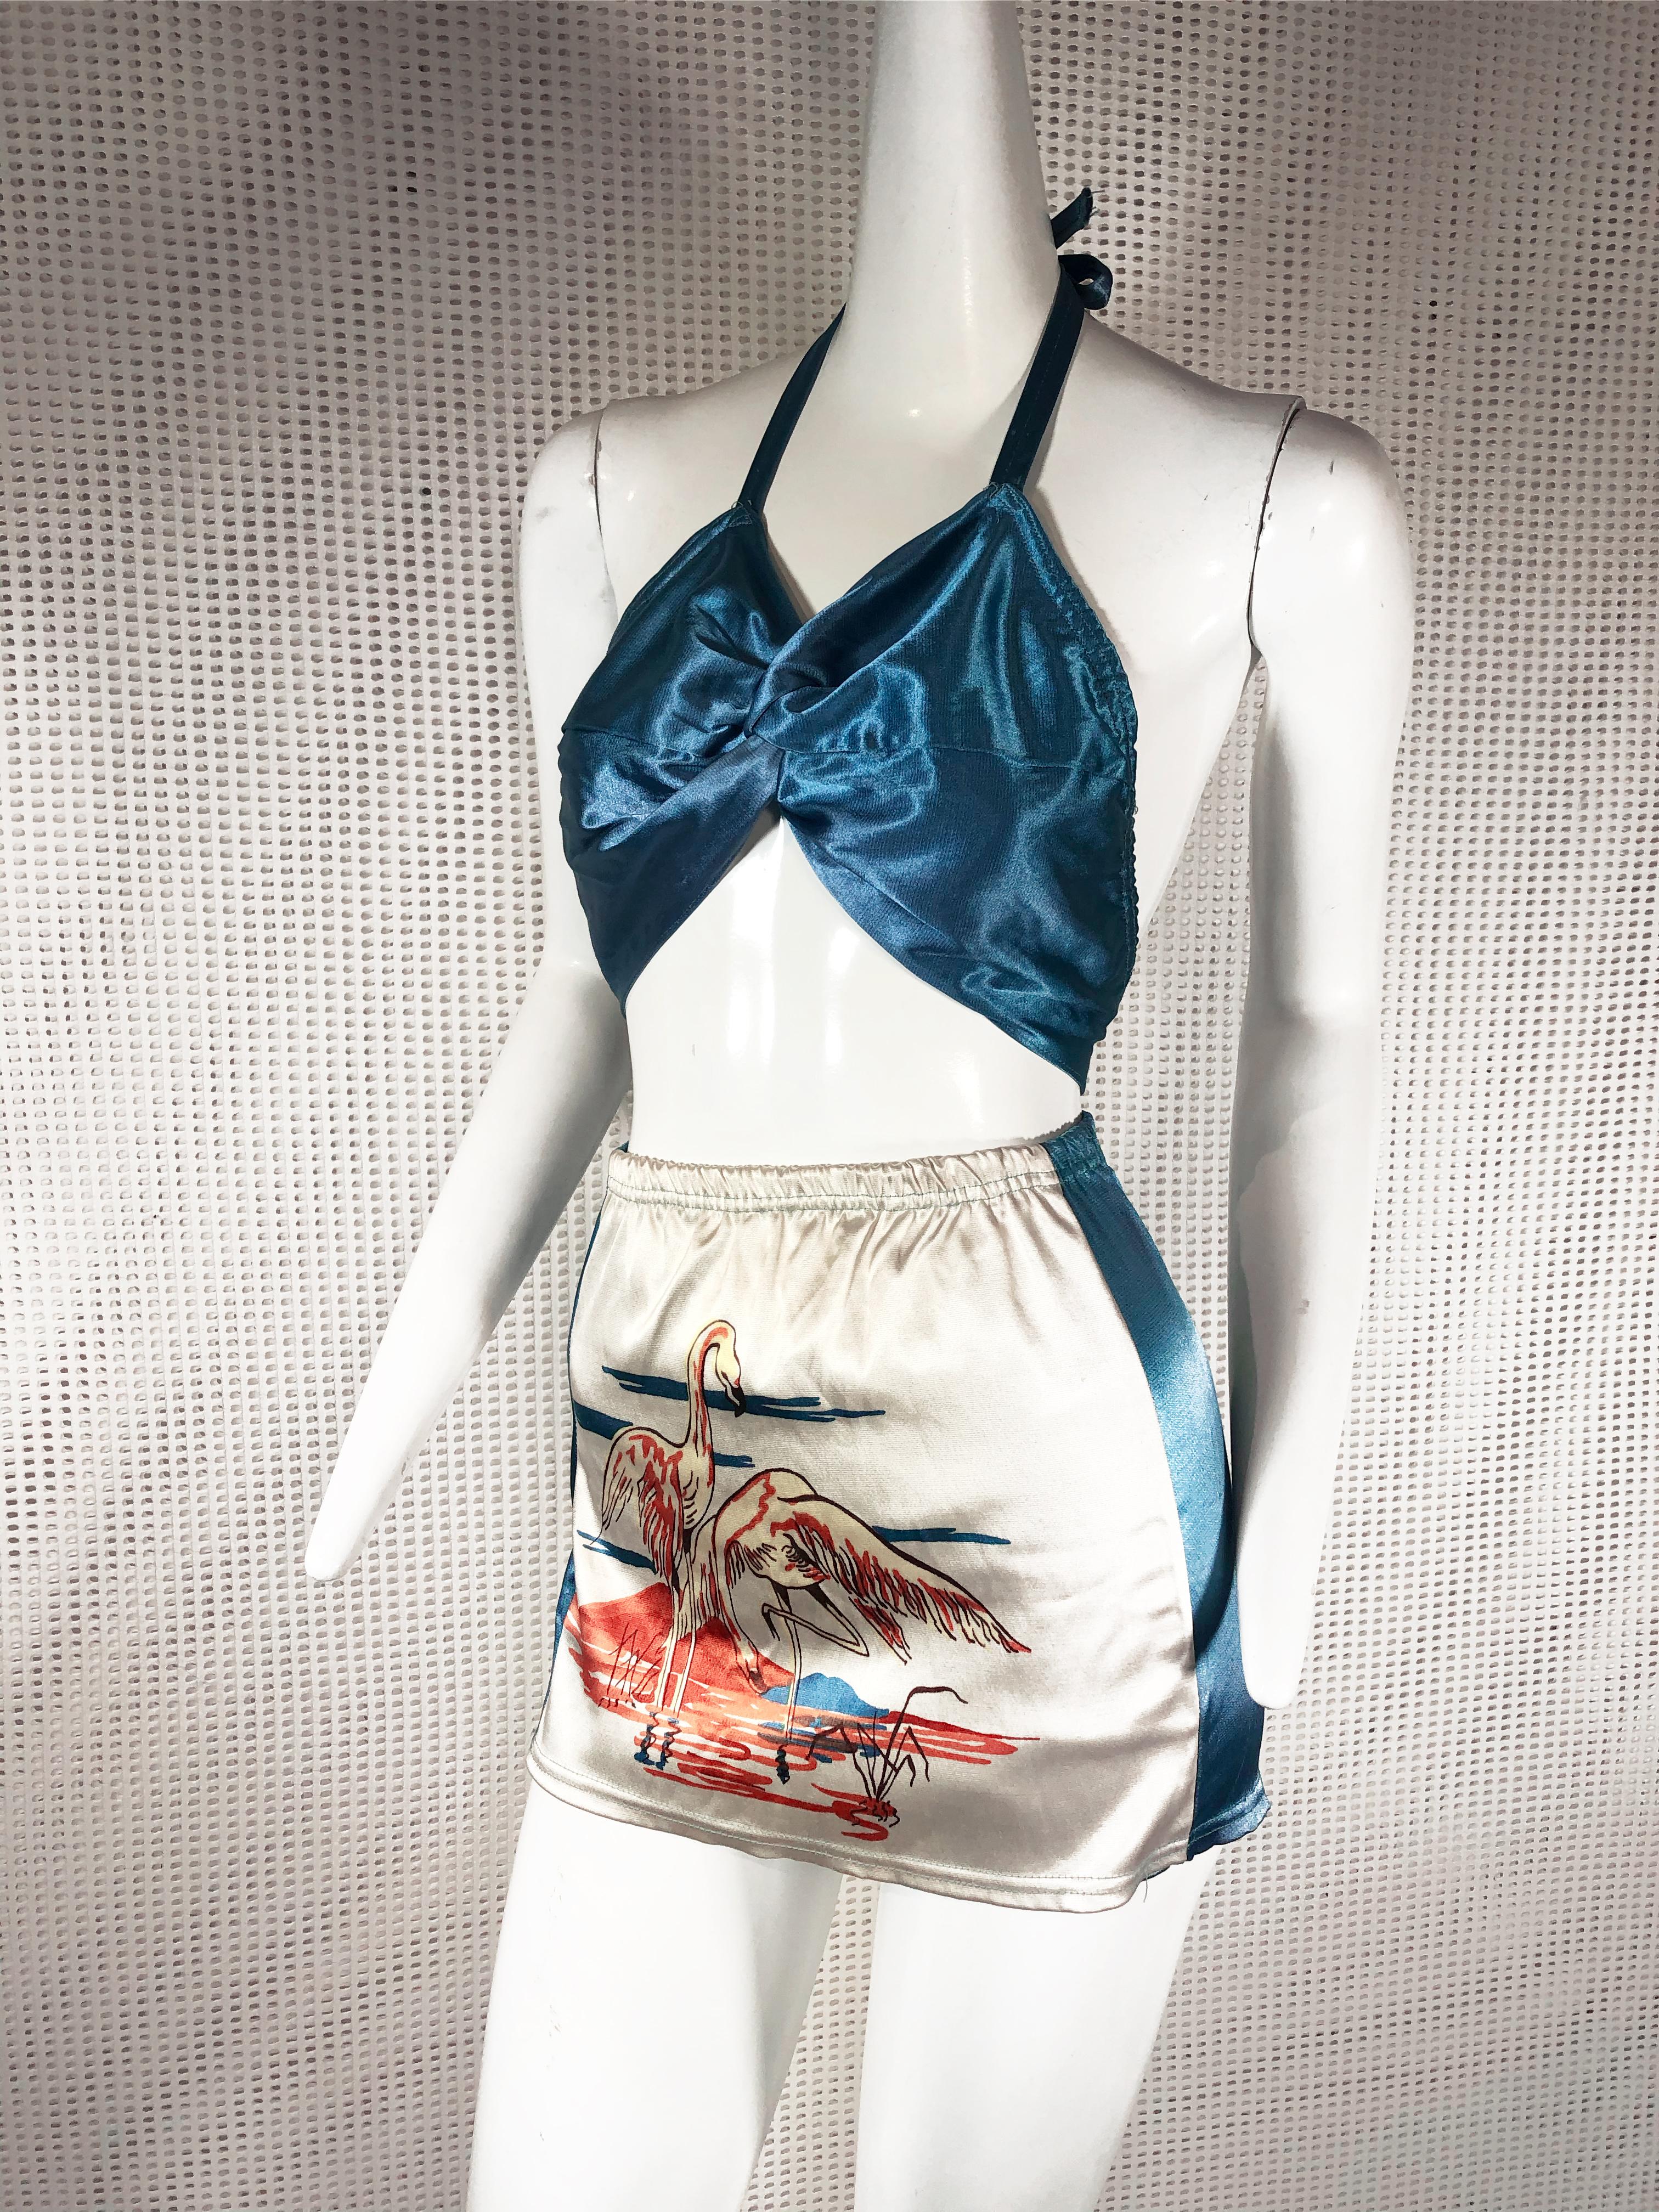 zweiteiliger Pin-Up-Badeanzug im Hollywood-Stil der 1940er Jahre mit Flamingo-Print: Oberteil mit Neckholder-Krawatte und hochtailliertes Unterteil aus azurblauem und weißem Satin. Größe Medium. Kein Reißverschluss, zum Anziehen. Ausgezeichneter